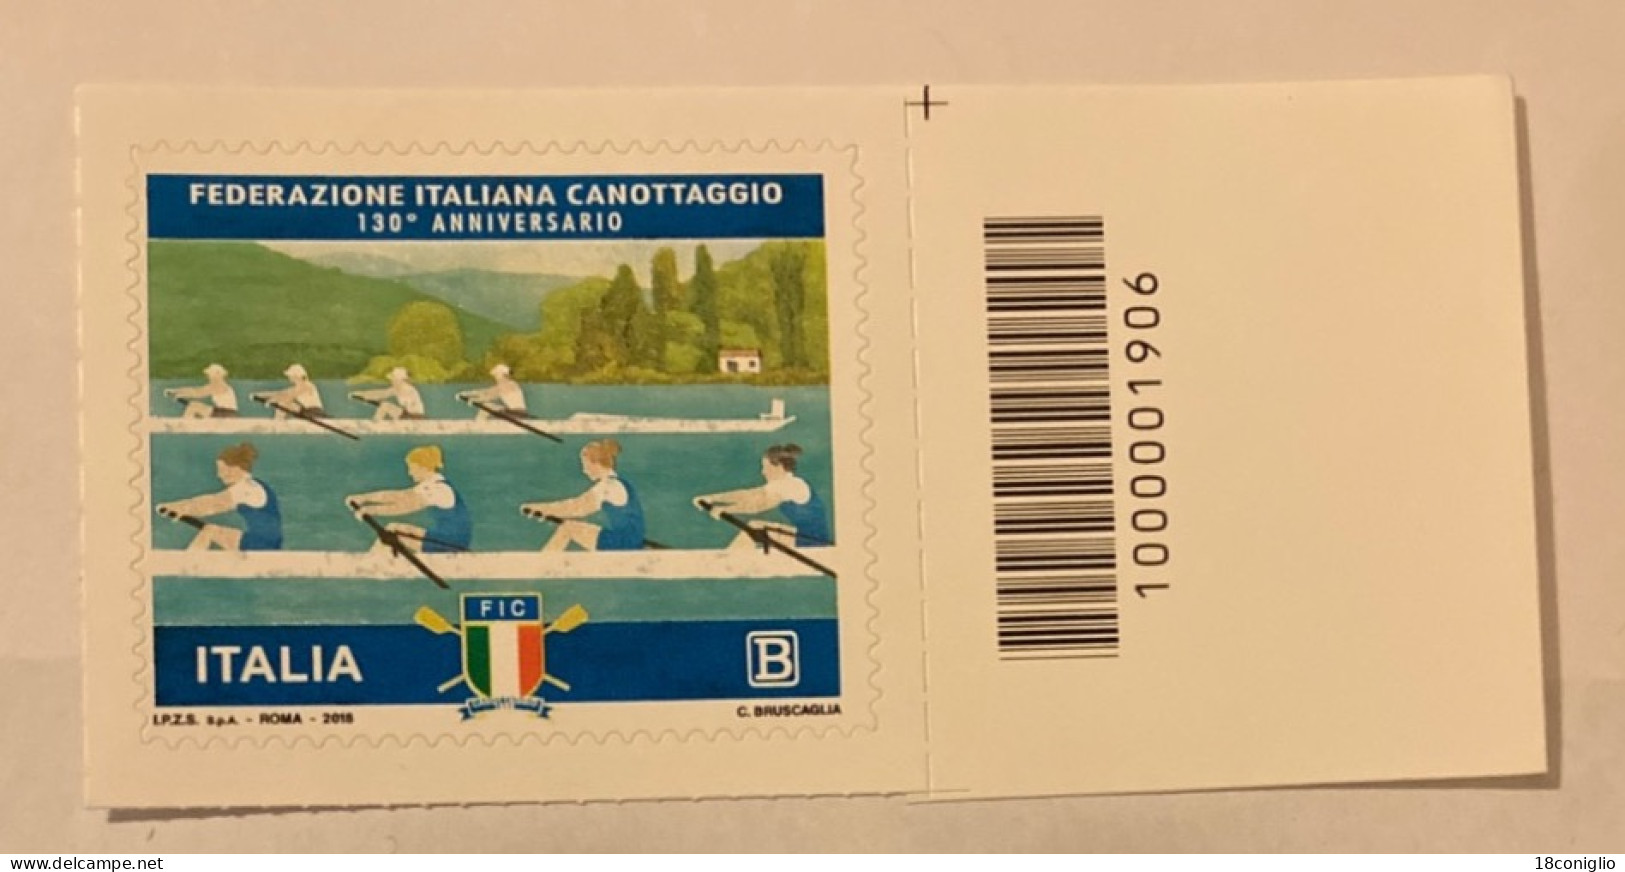 Italia 2018 Codice A Barre 1906 Federazione Italiana Canottaggio - Bar Codes